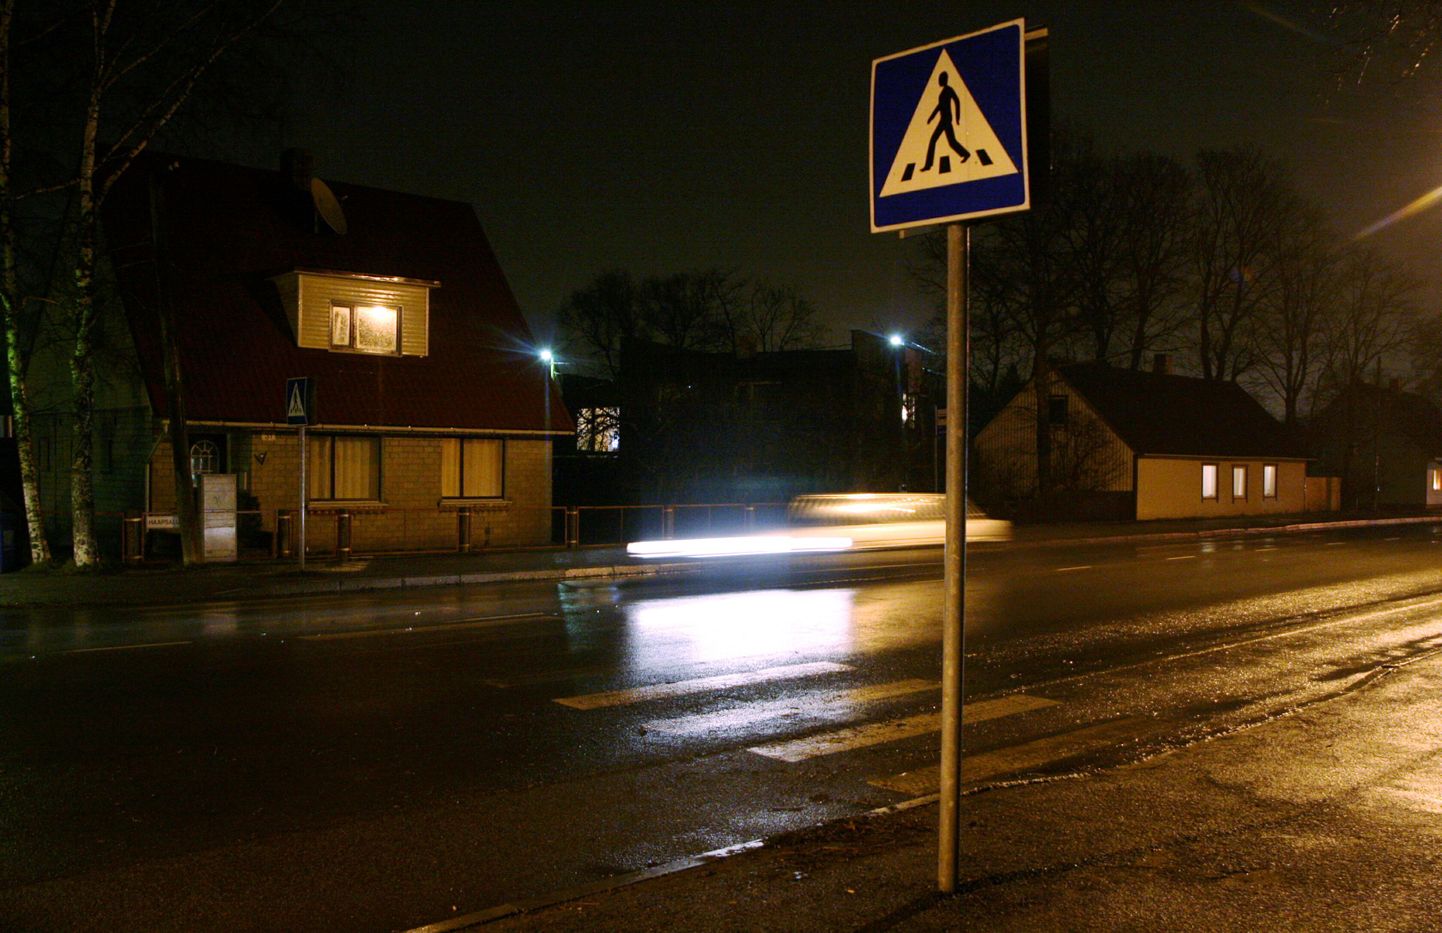 Pärnu linnavalitsus otsustas kulude kokkuhoidmiseks öisel ajal iga teise tänavavalgustuslambi välja keerata, jättes endiseks üksnes ristmike ja ülekäiguradade valgustuse.